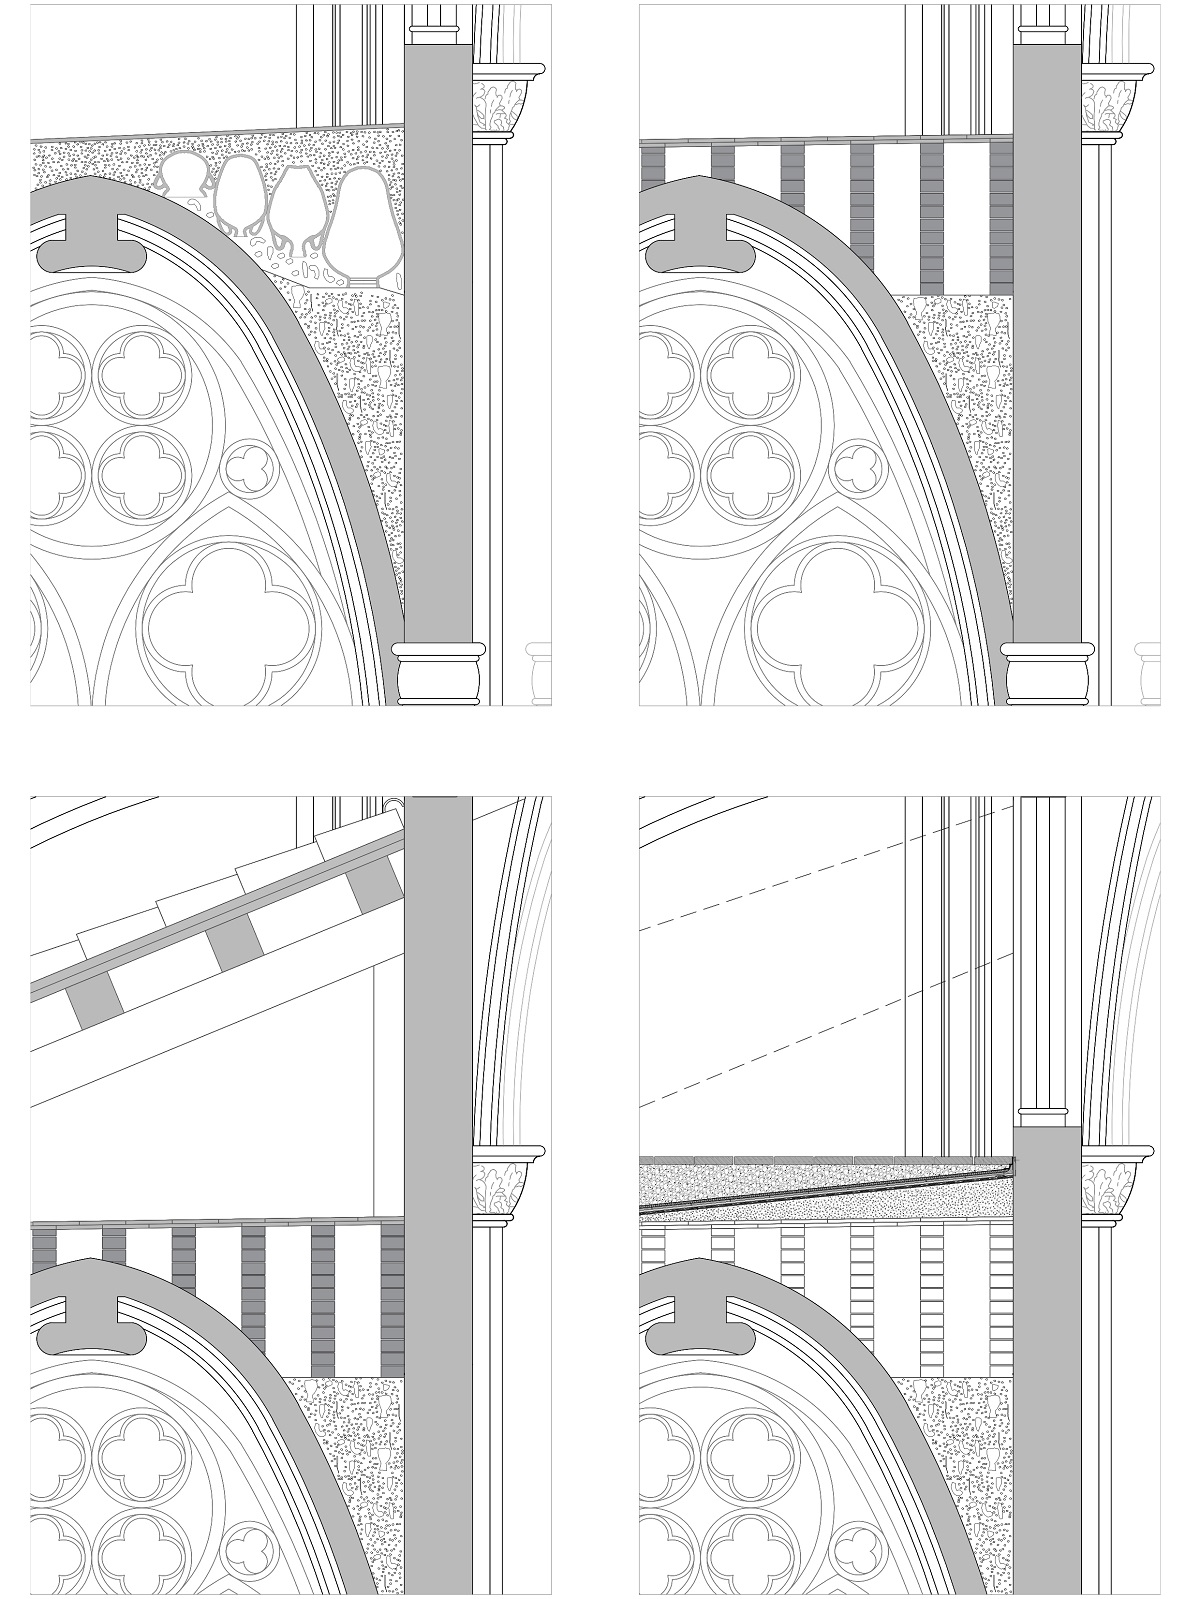 Simulación de la evolución de la sección cubierta en la catedral Tortosa: a) trespol de 1383; b) terrat de 1394; c) cubierta inclinada de 1803; d) retorno al original en 1998